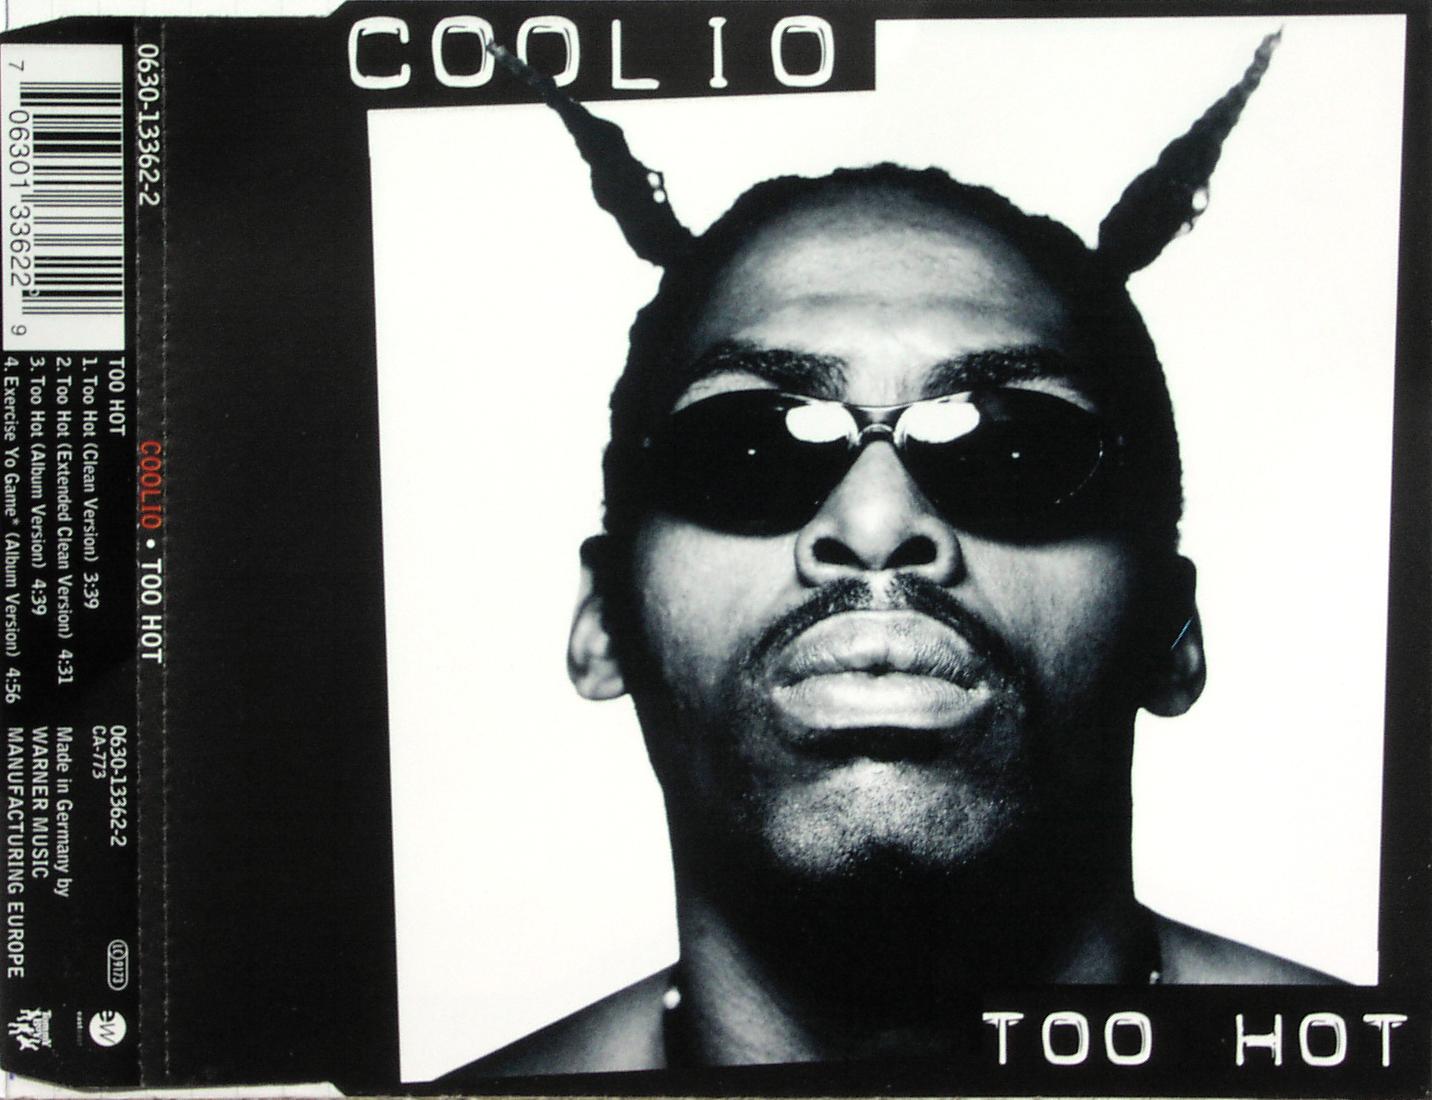 COOLIO - Too Hot - CD Maxi